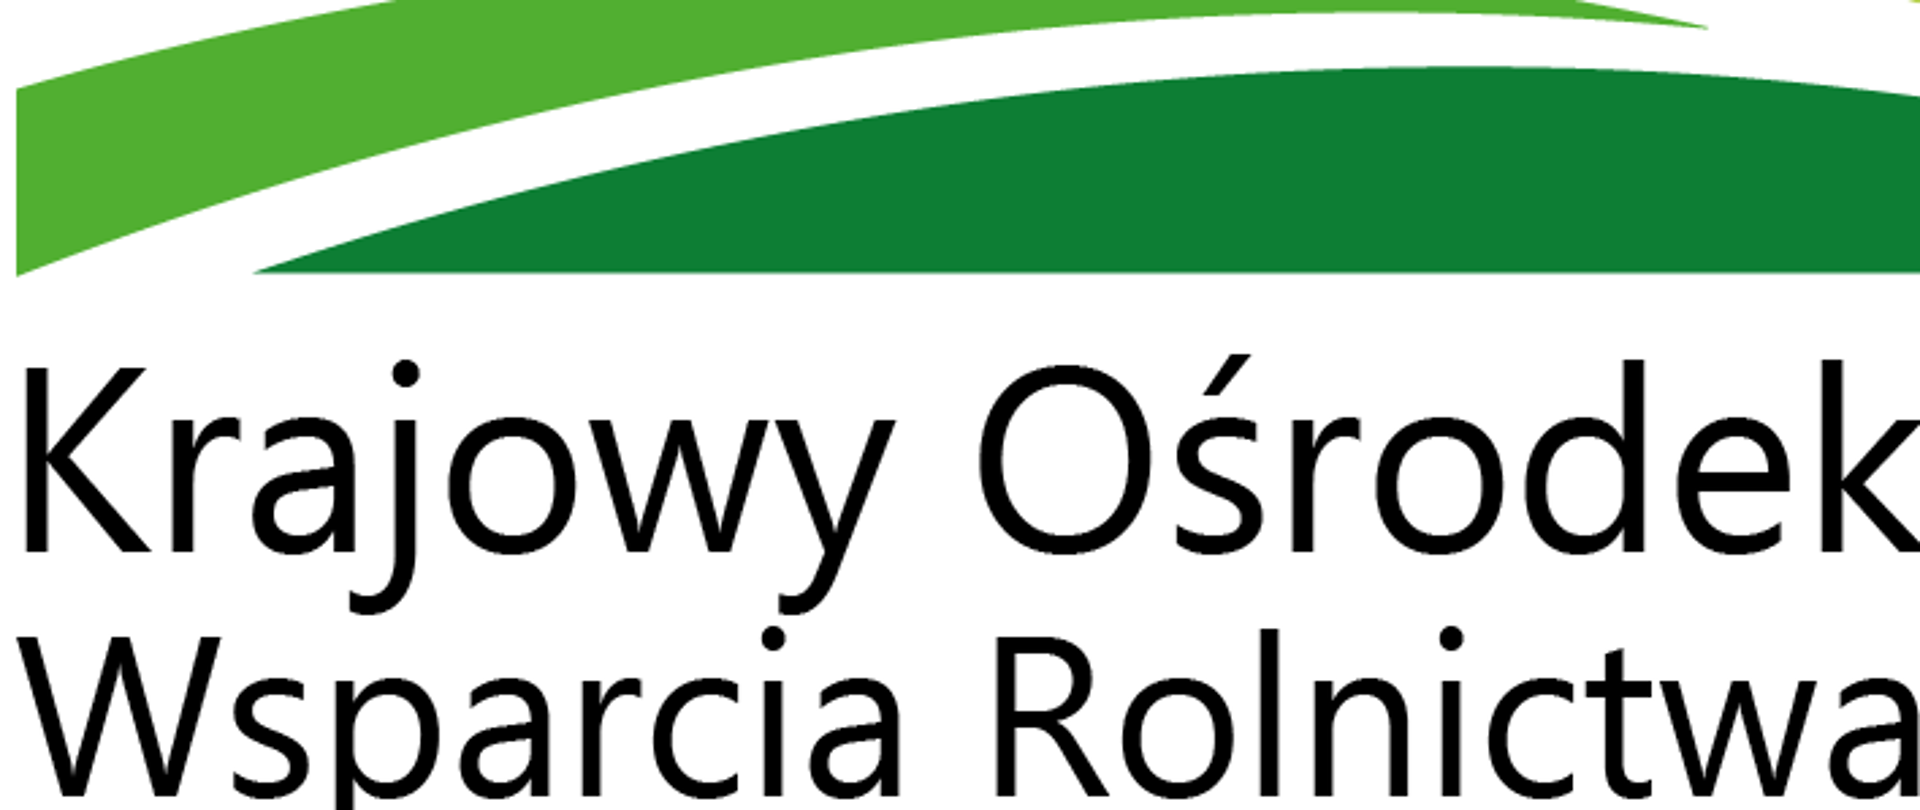 Zdjęcie przedstawia logo Krajowego Ośrodka Wsparcia Rolnictwa.